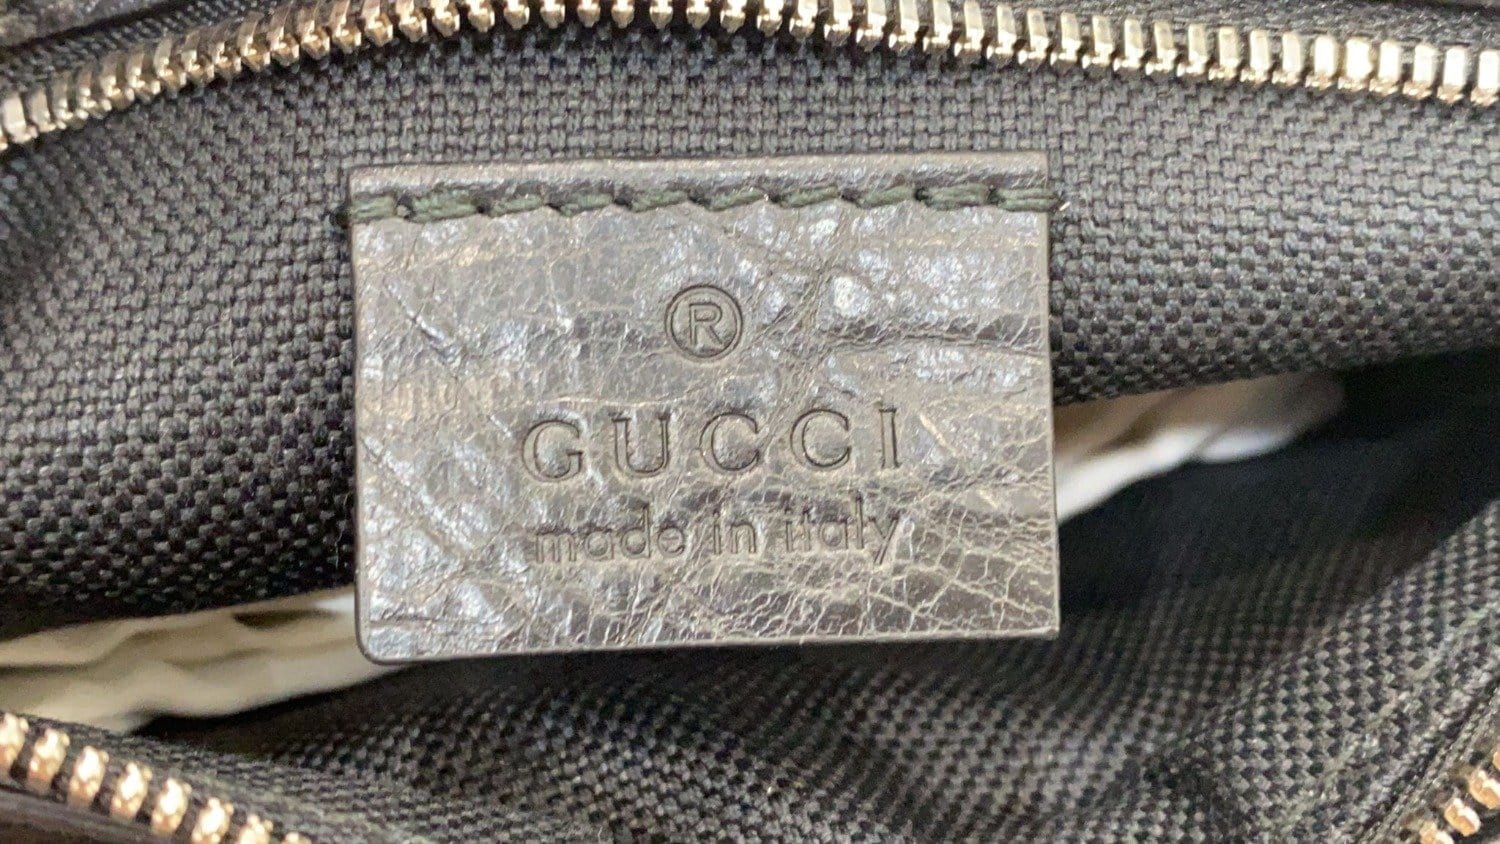 Produktion ugyldig nød Gucci Belt Bag Black - Preloved Handbag for sale